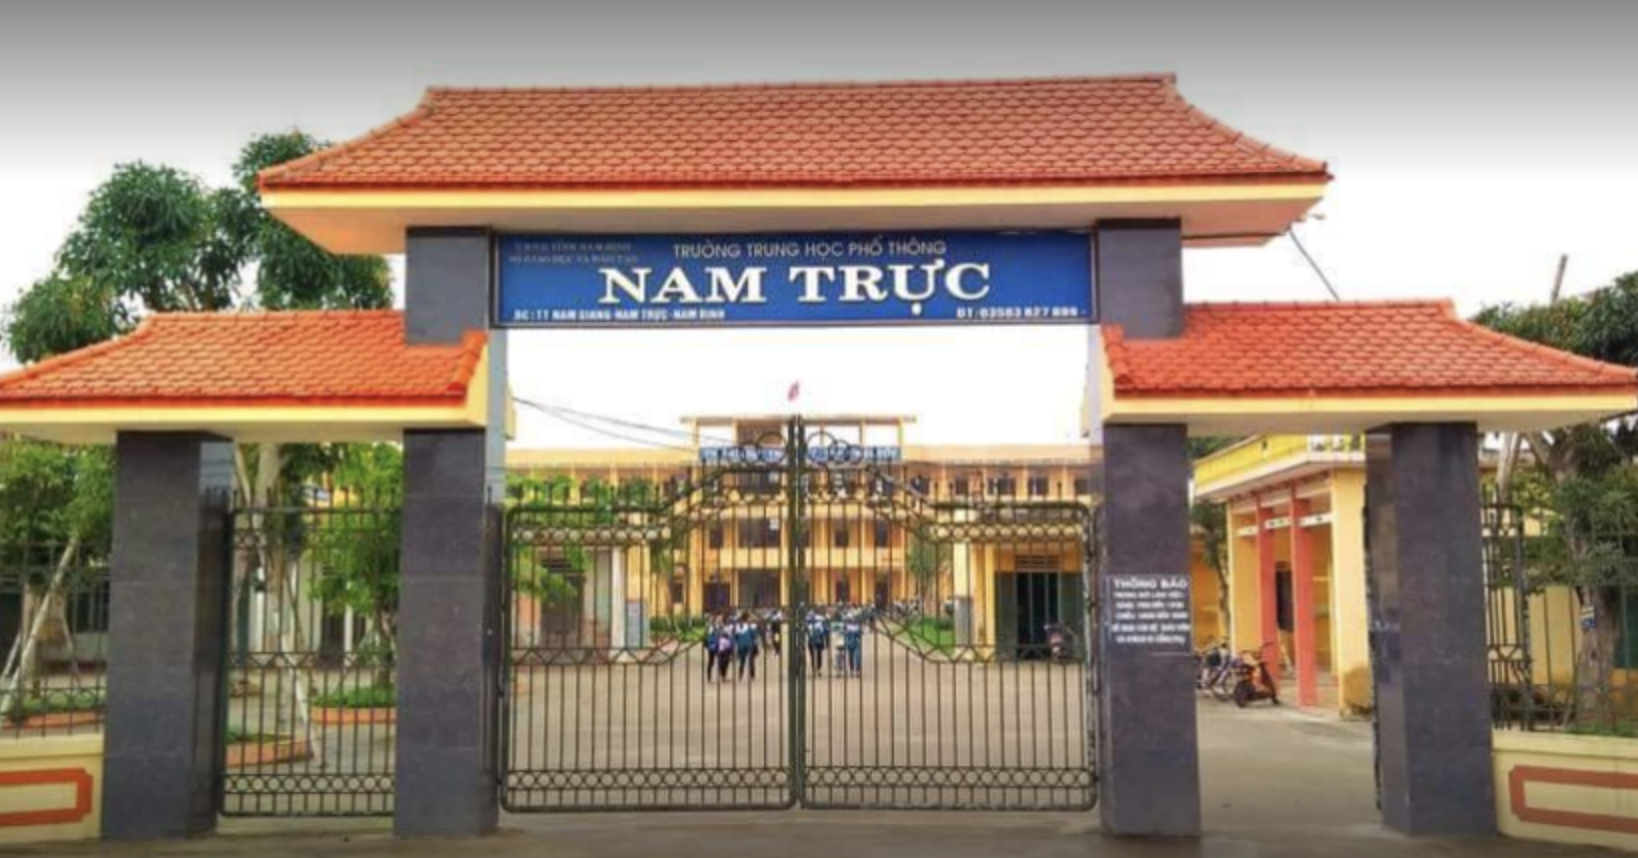 Sau khi sự việc xảy ra, nhà trường đã vào cuộc xác minh, tìm hiểu sự việc và báo cáo Sở Giáo dục và Đào tạo tỉnh Nam Định